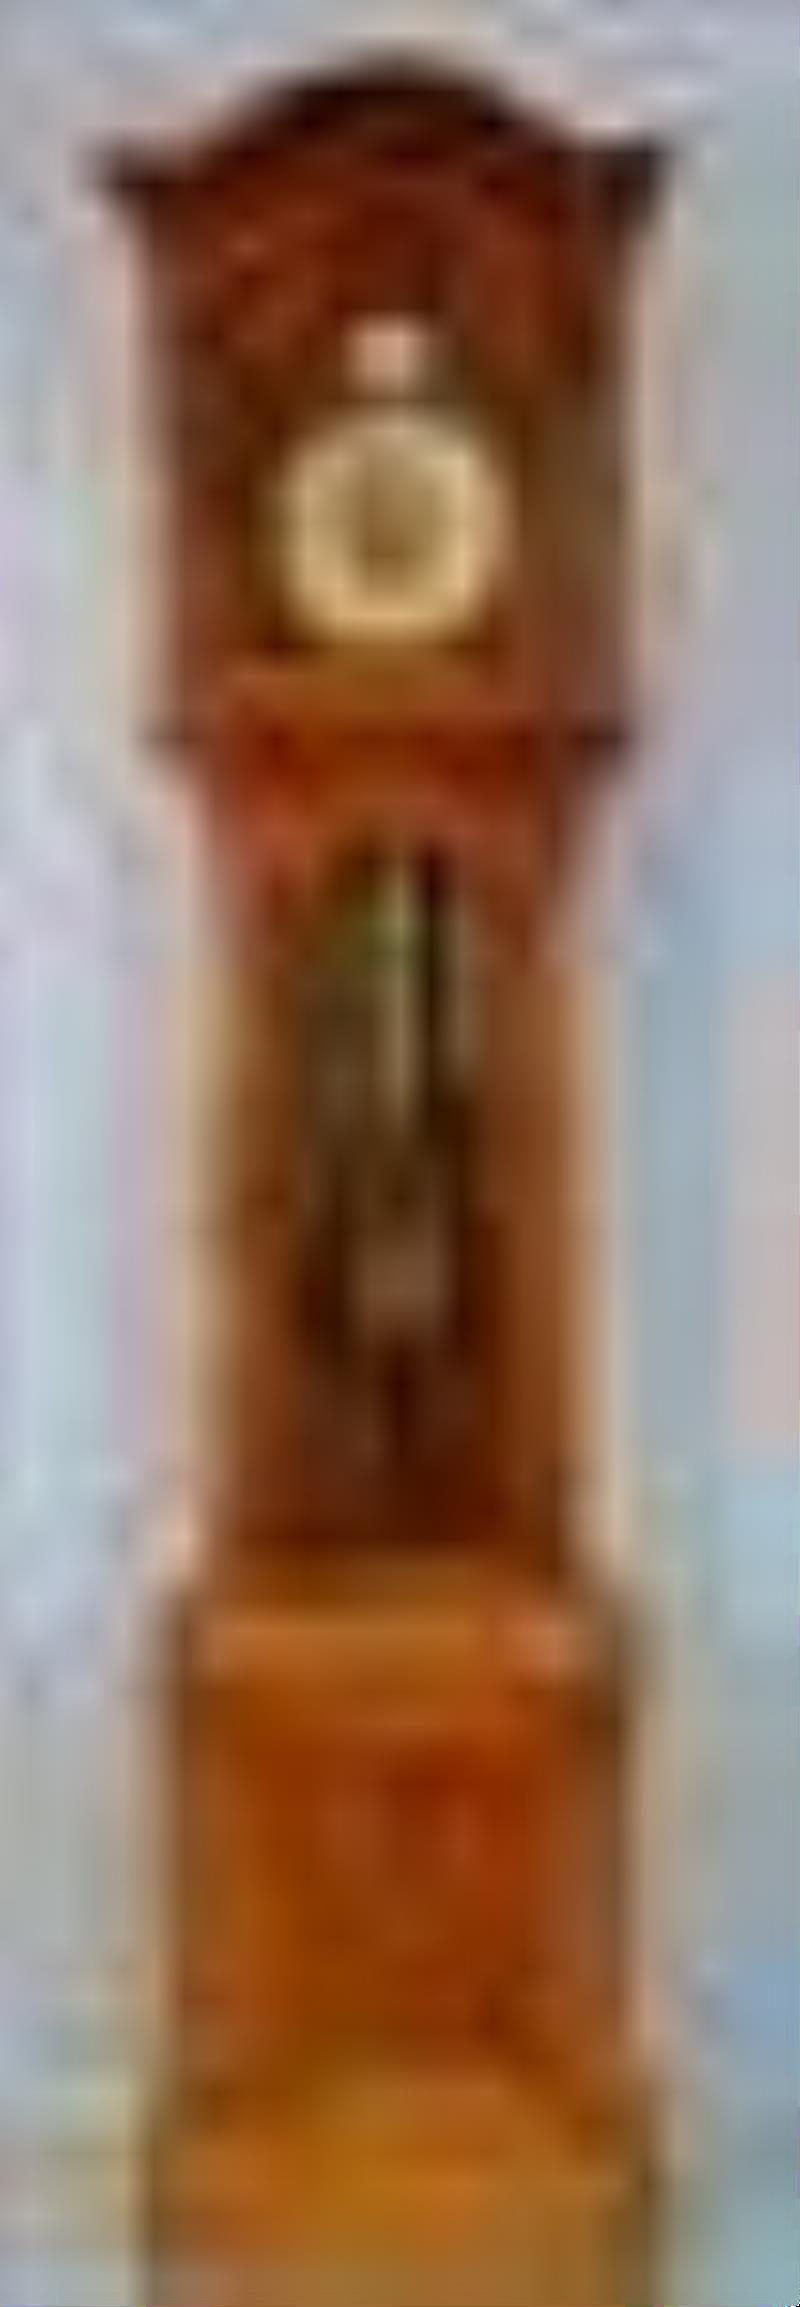 German made mahogany grandfather clock